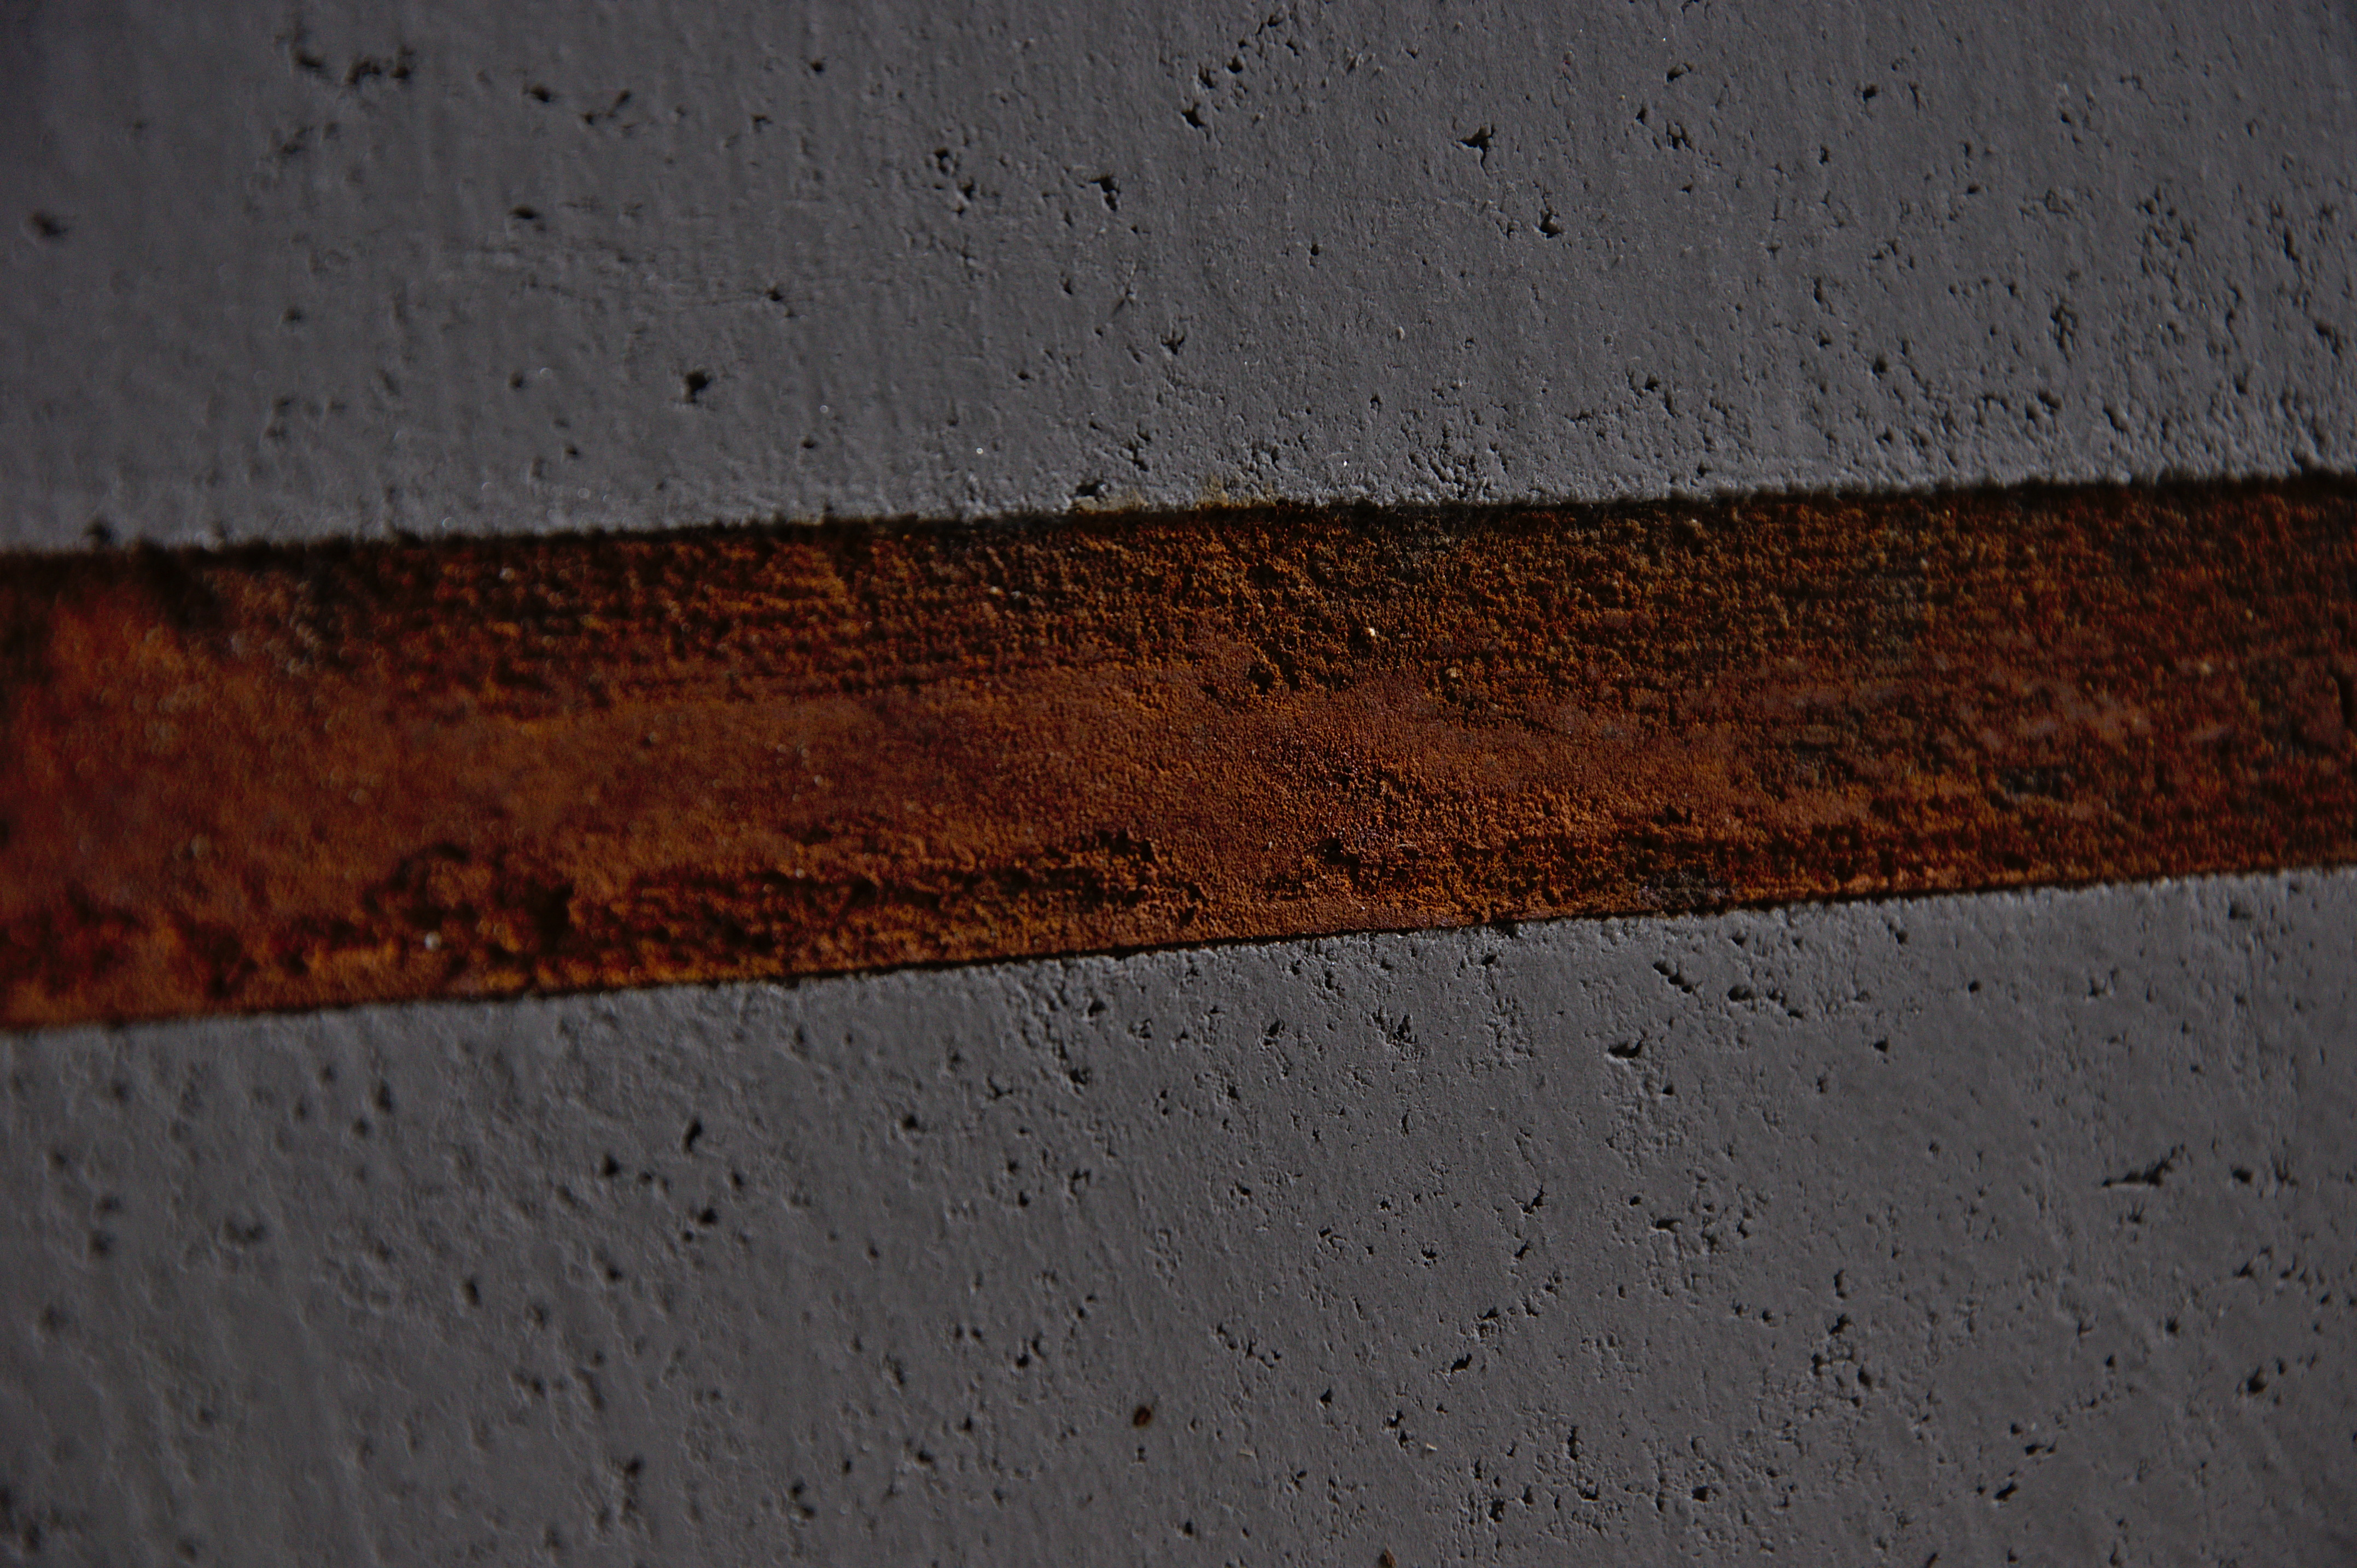 Rdzawe intruzje w betonie dekoracyjnym